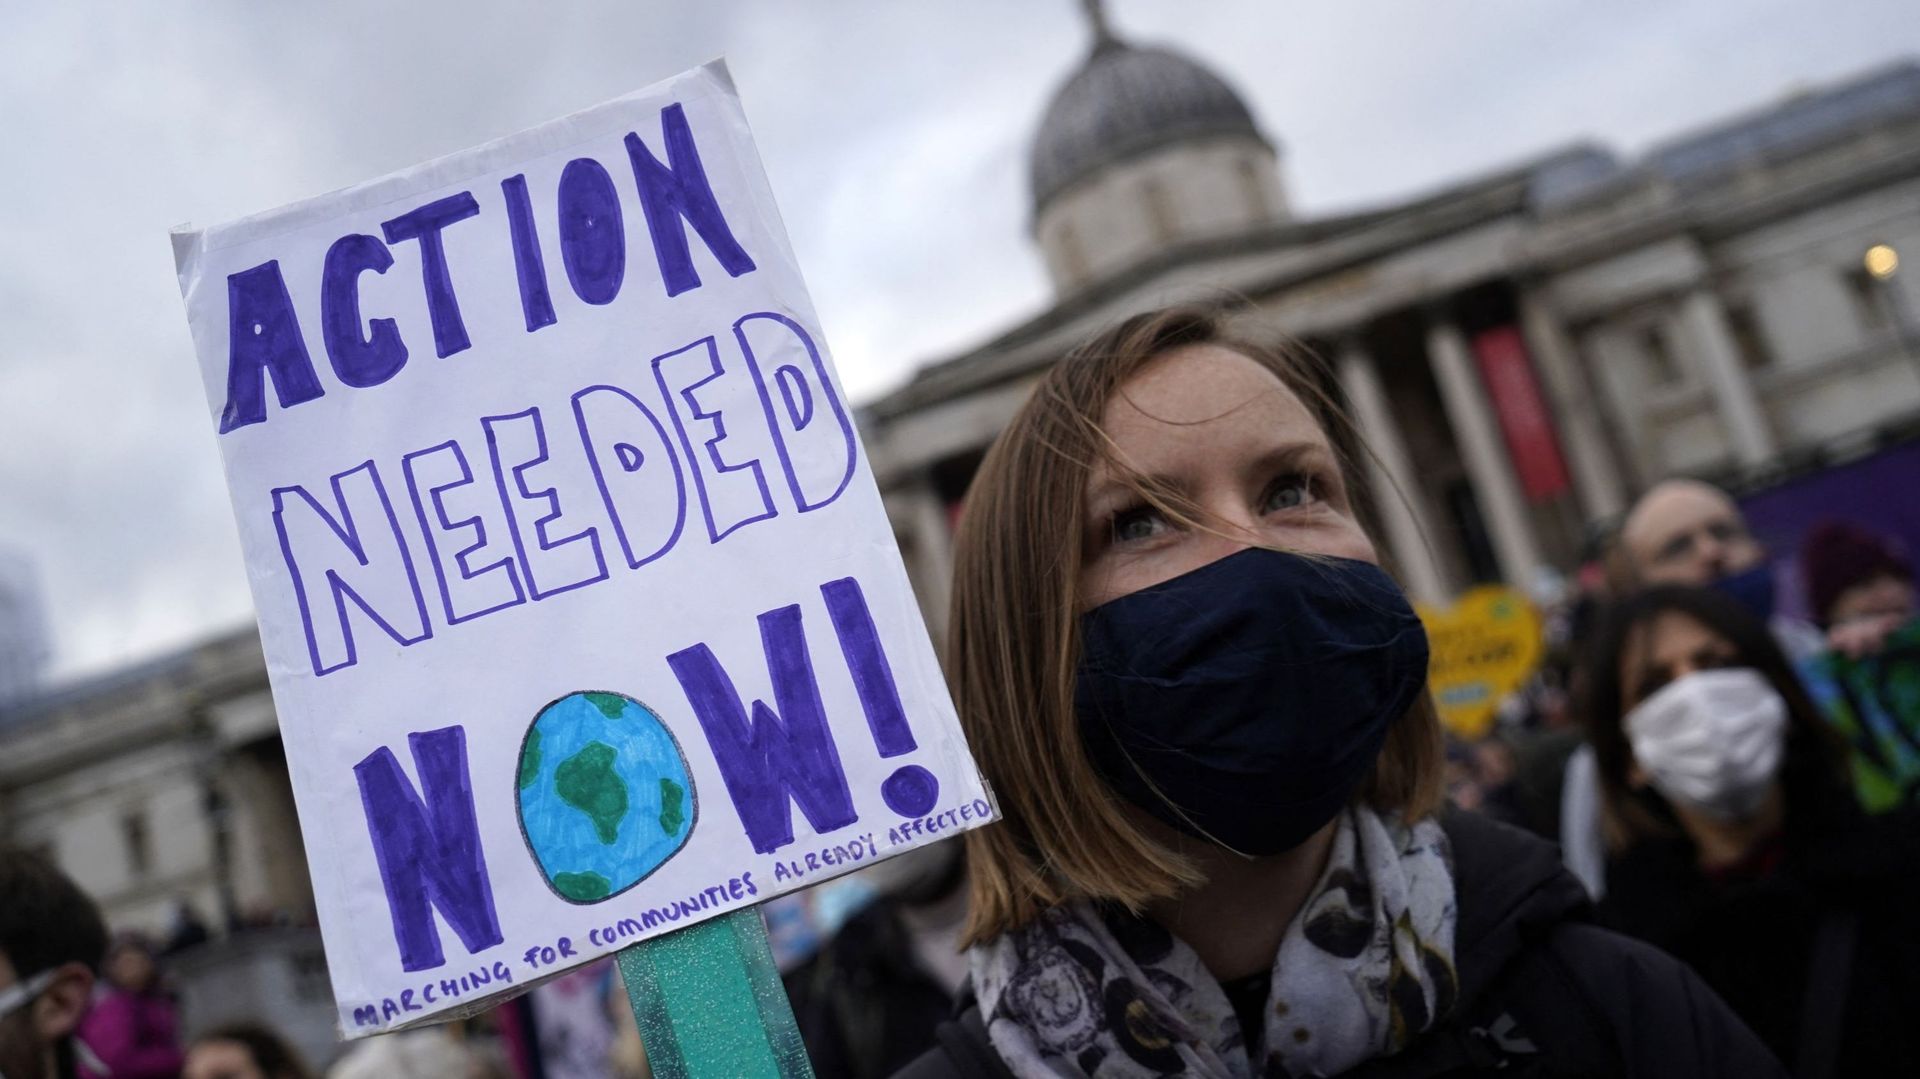 "De l’action est nécessaire maintenant !", affirme la banderole d’une manifestante sur Trafalgar Square, à Londres.